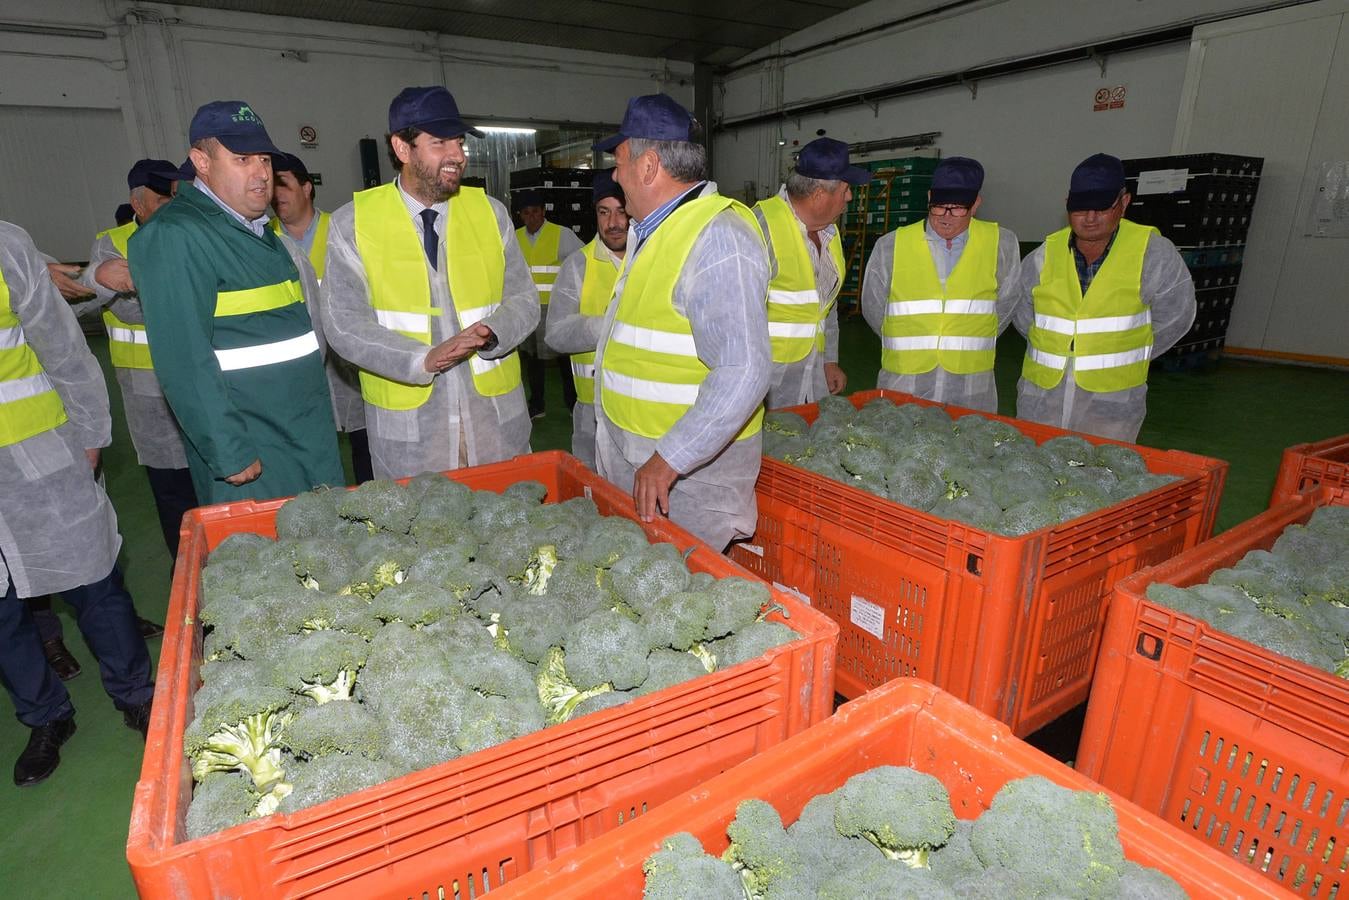 La firma lorquina explota más de 3.000 hectáreas de cultivo, de las que quinientas se dedican a productos ecológicos como brócoli, col picuda, coliflor y lechuga.